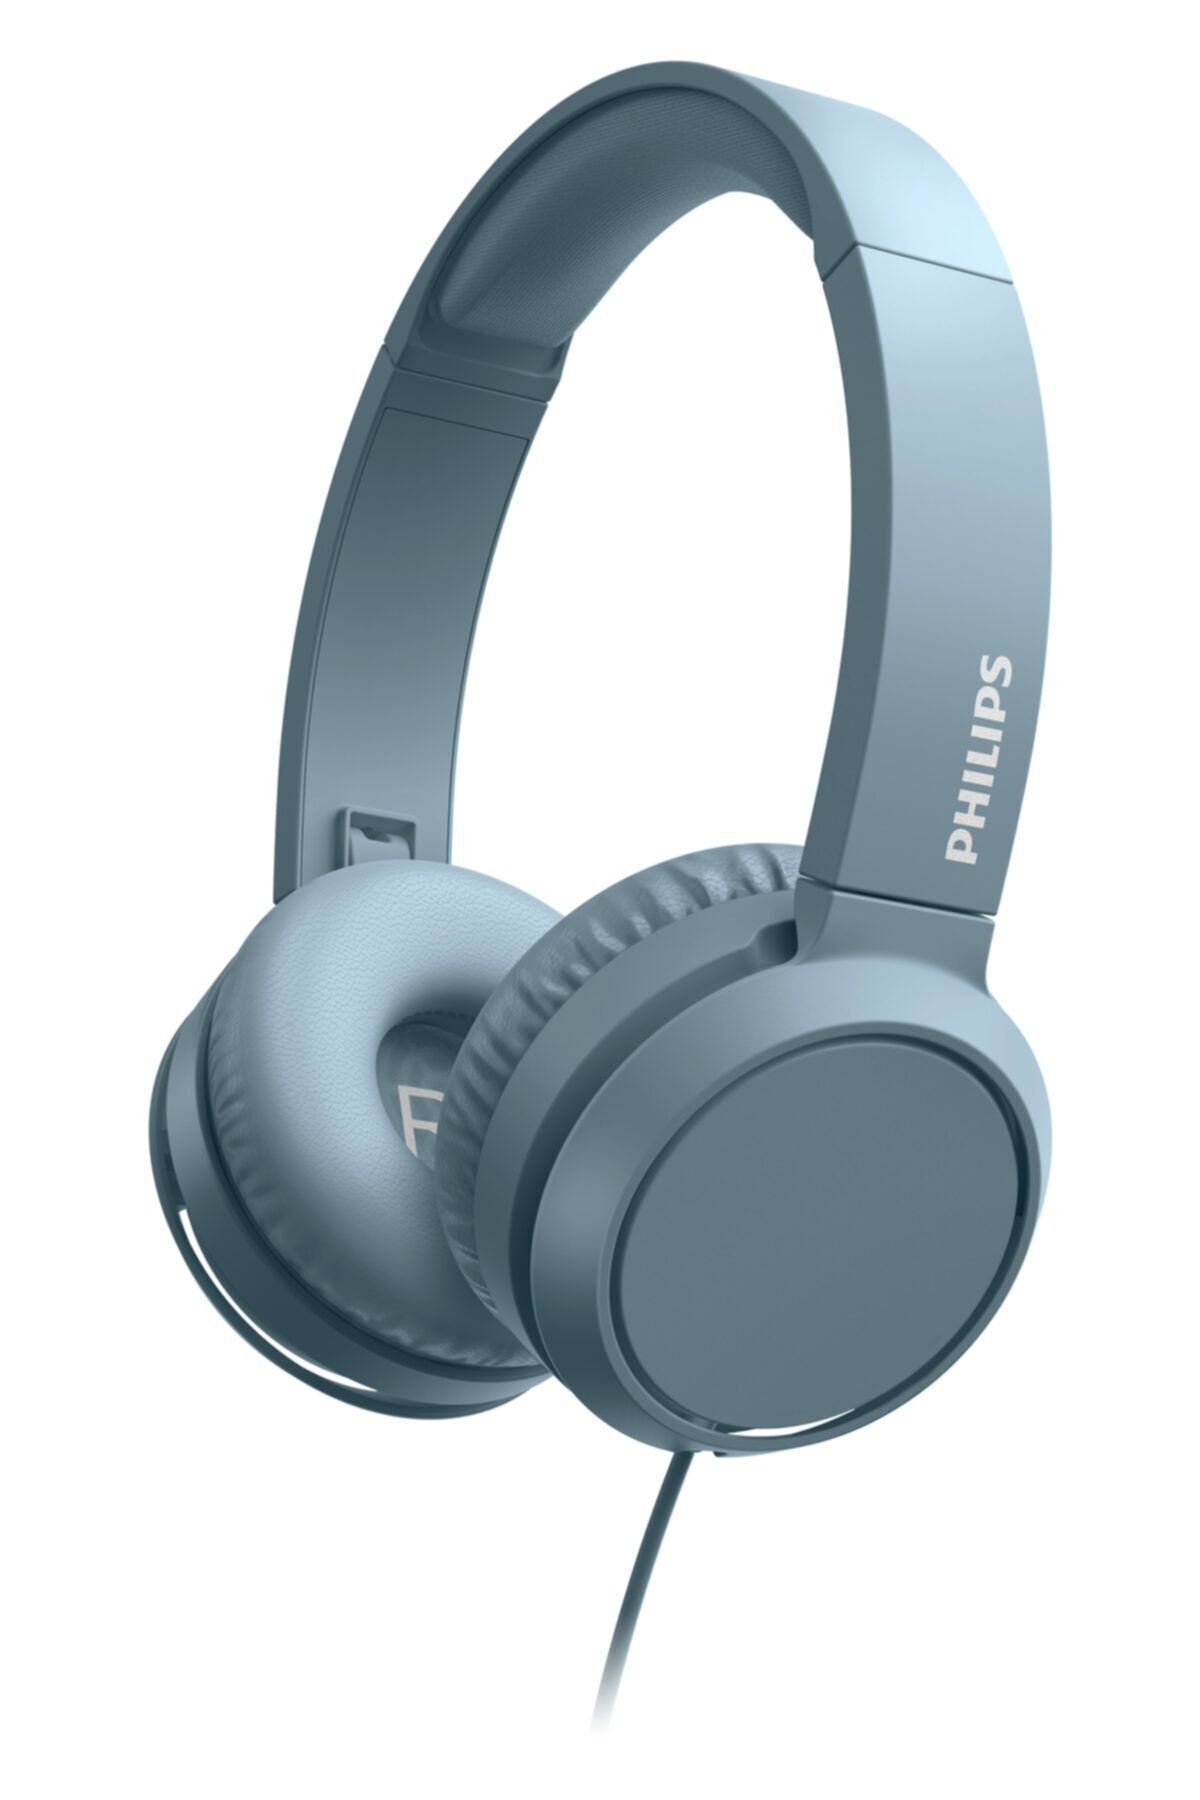 Philips Tah4105bl Mavi Mikrofonlu Kablolu Kulak Üstü Kulaklık